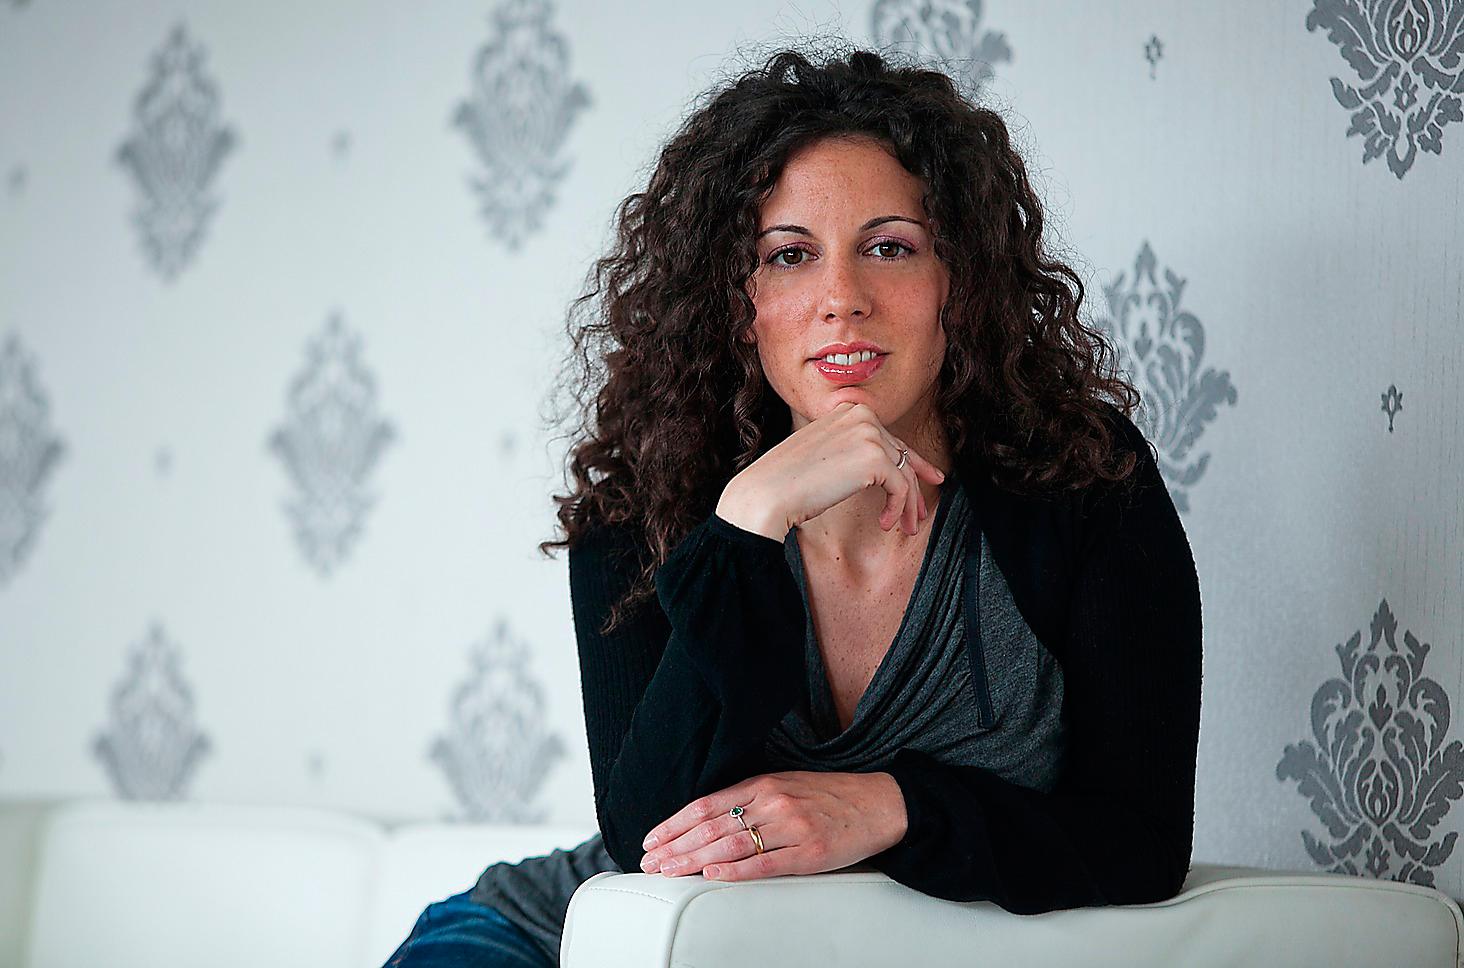 Silvia Avallone, född 1984, succédebuterade 2012 med romanen ”Stål” som översattes till 22 språk.  Foto: RCS Libri